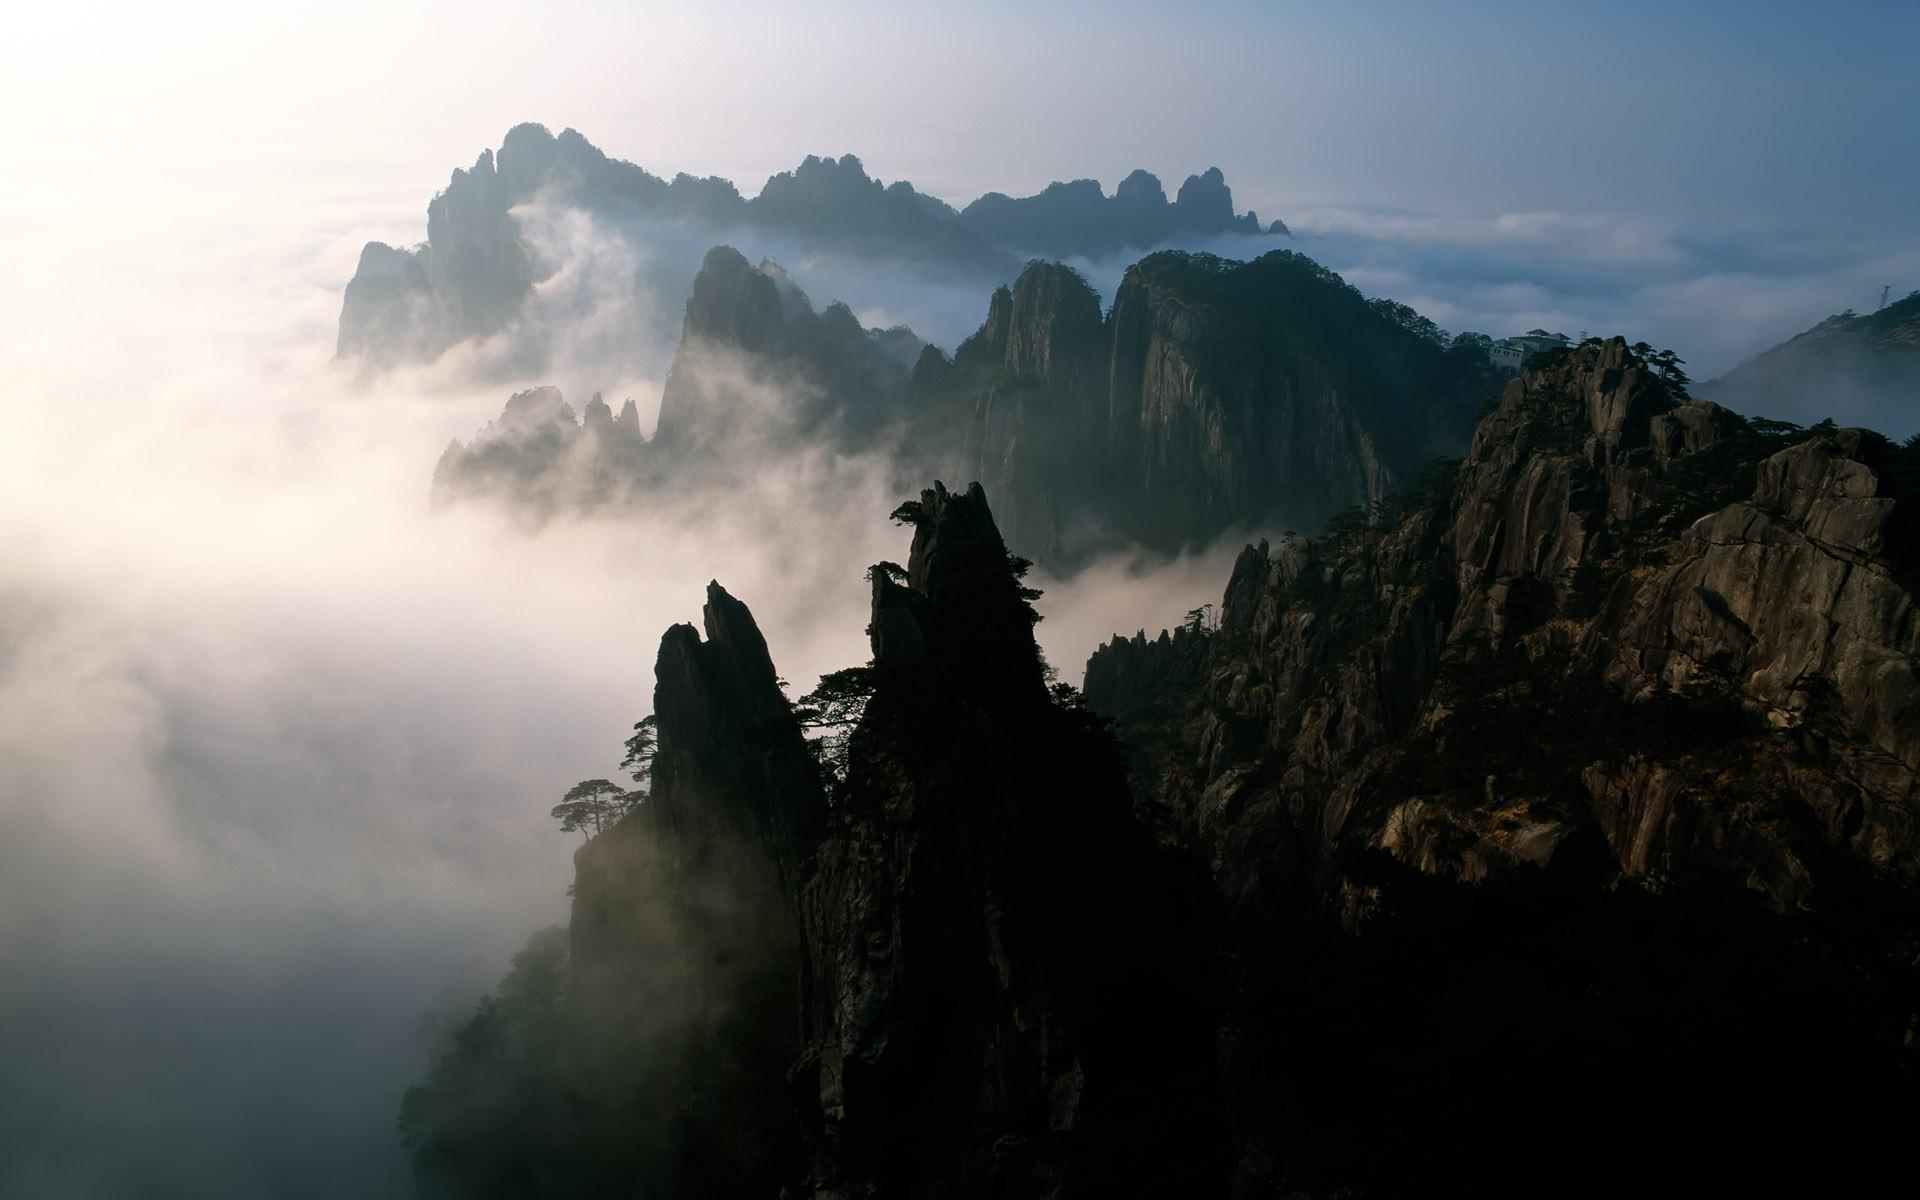 Amazing Mountain View, China widescreen wallpaper. Wide